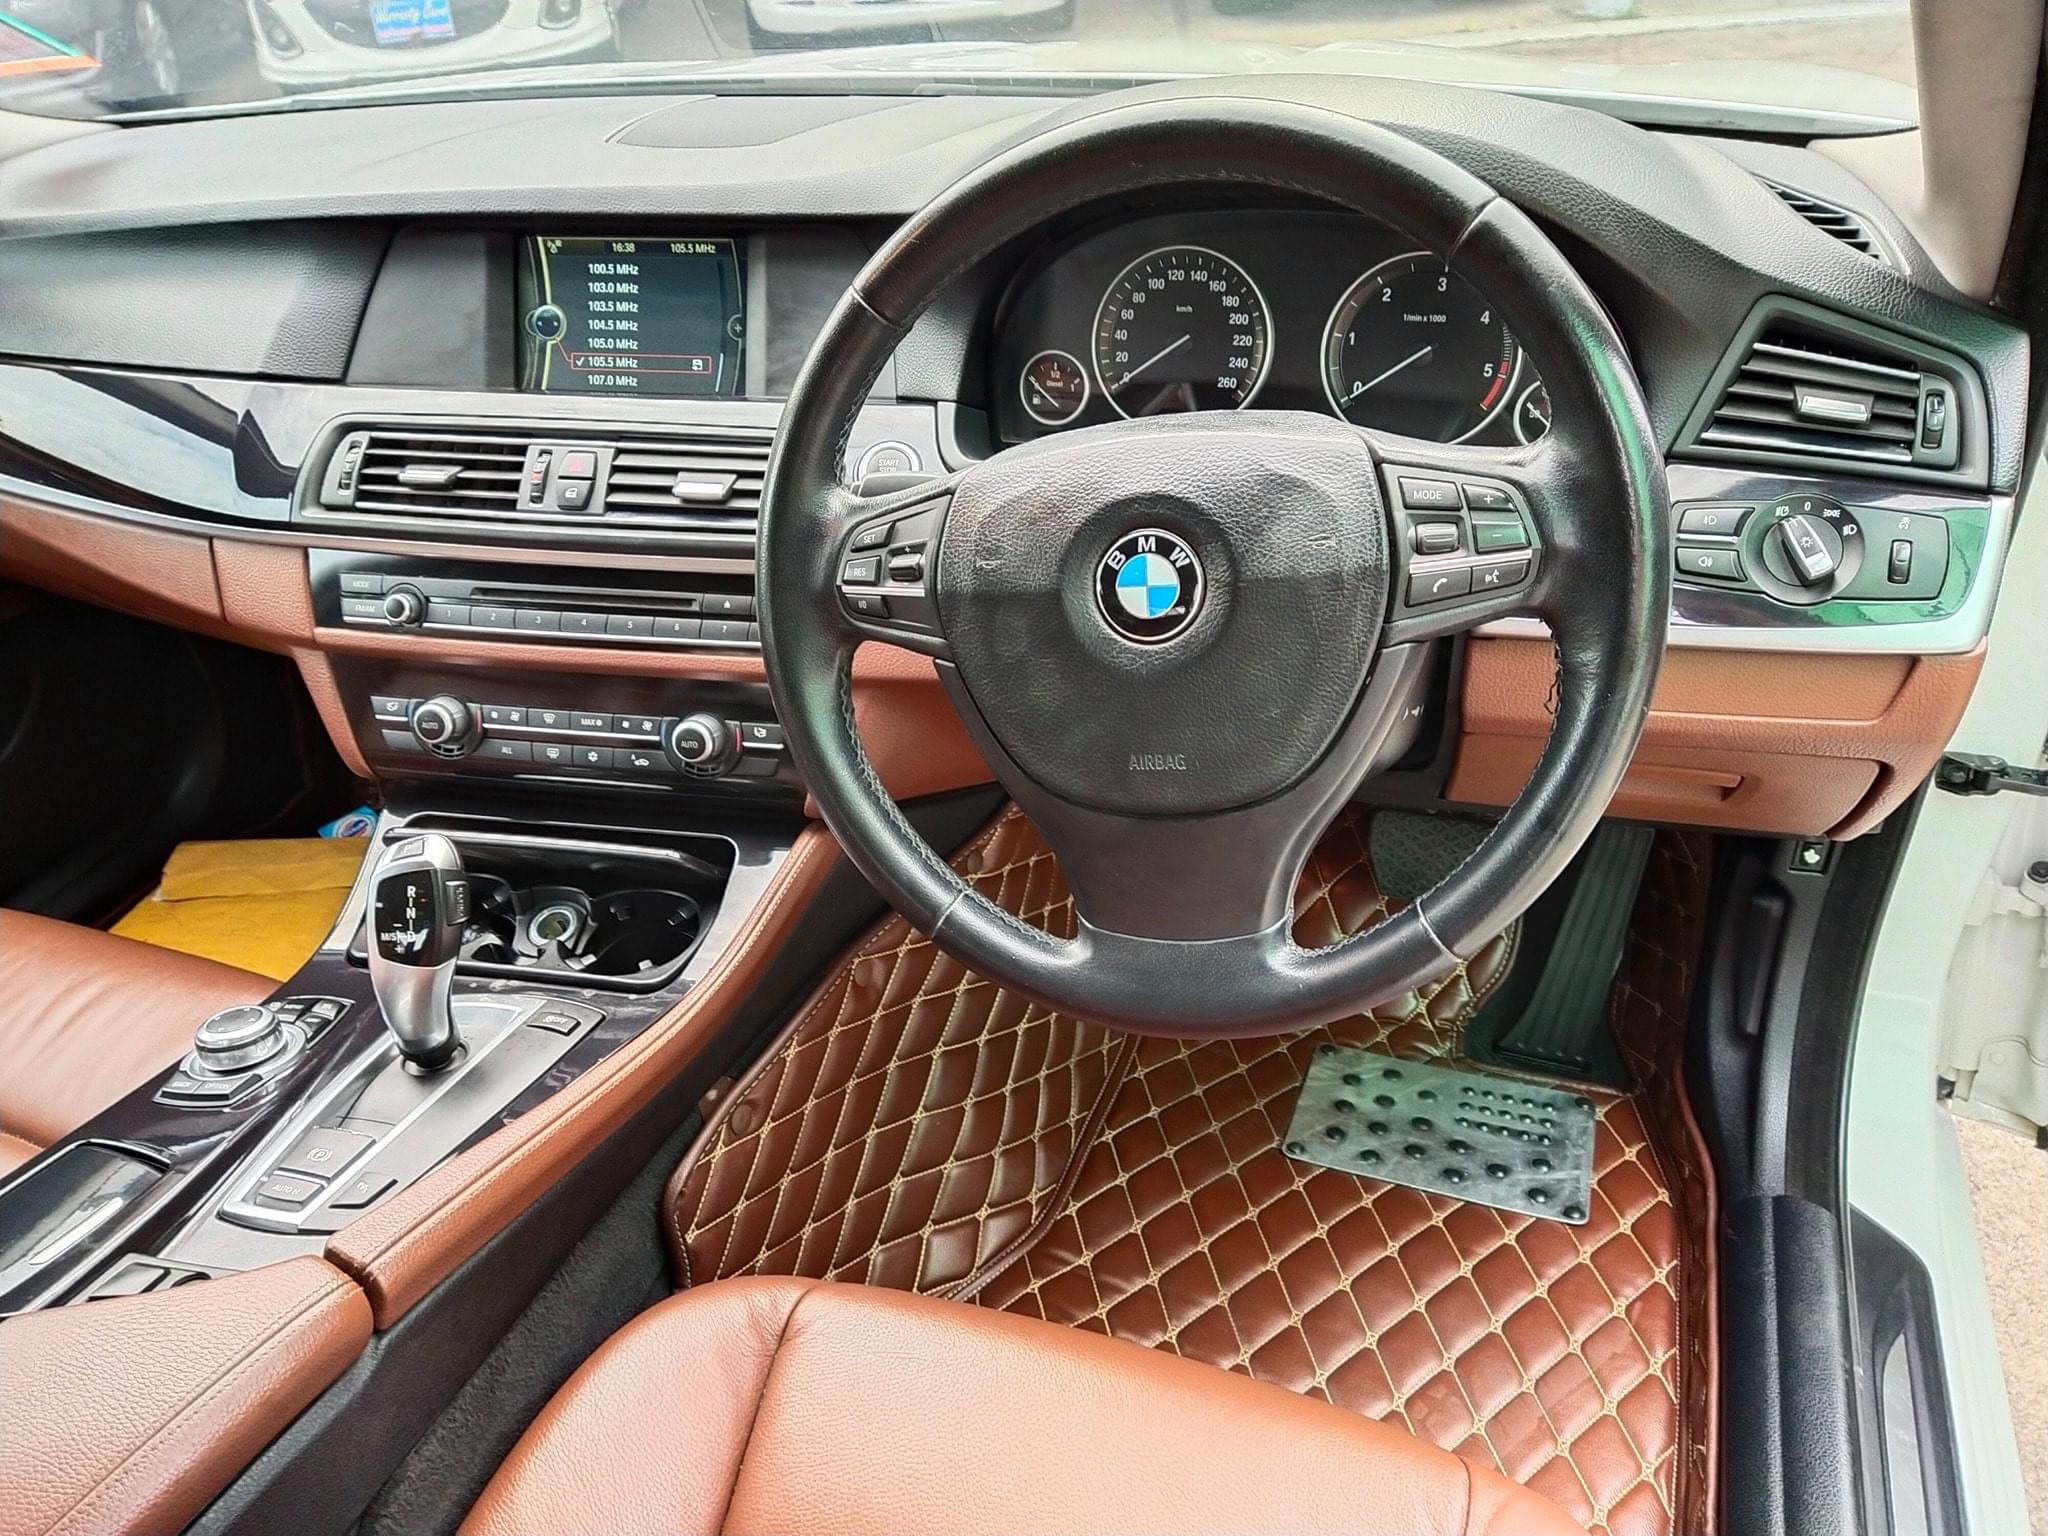 ขาย BMW 520D จดทะเบียน ปี 2014